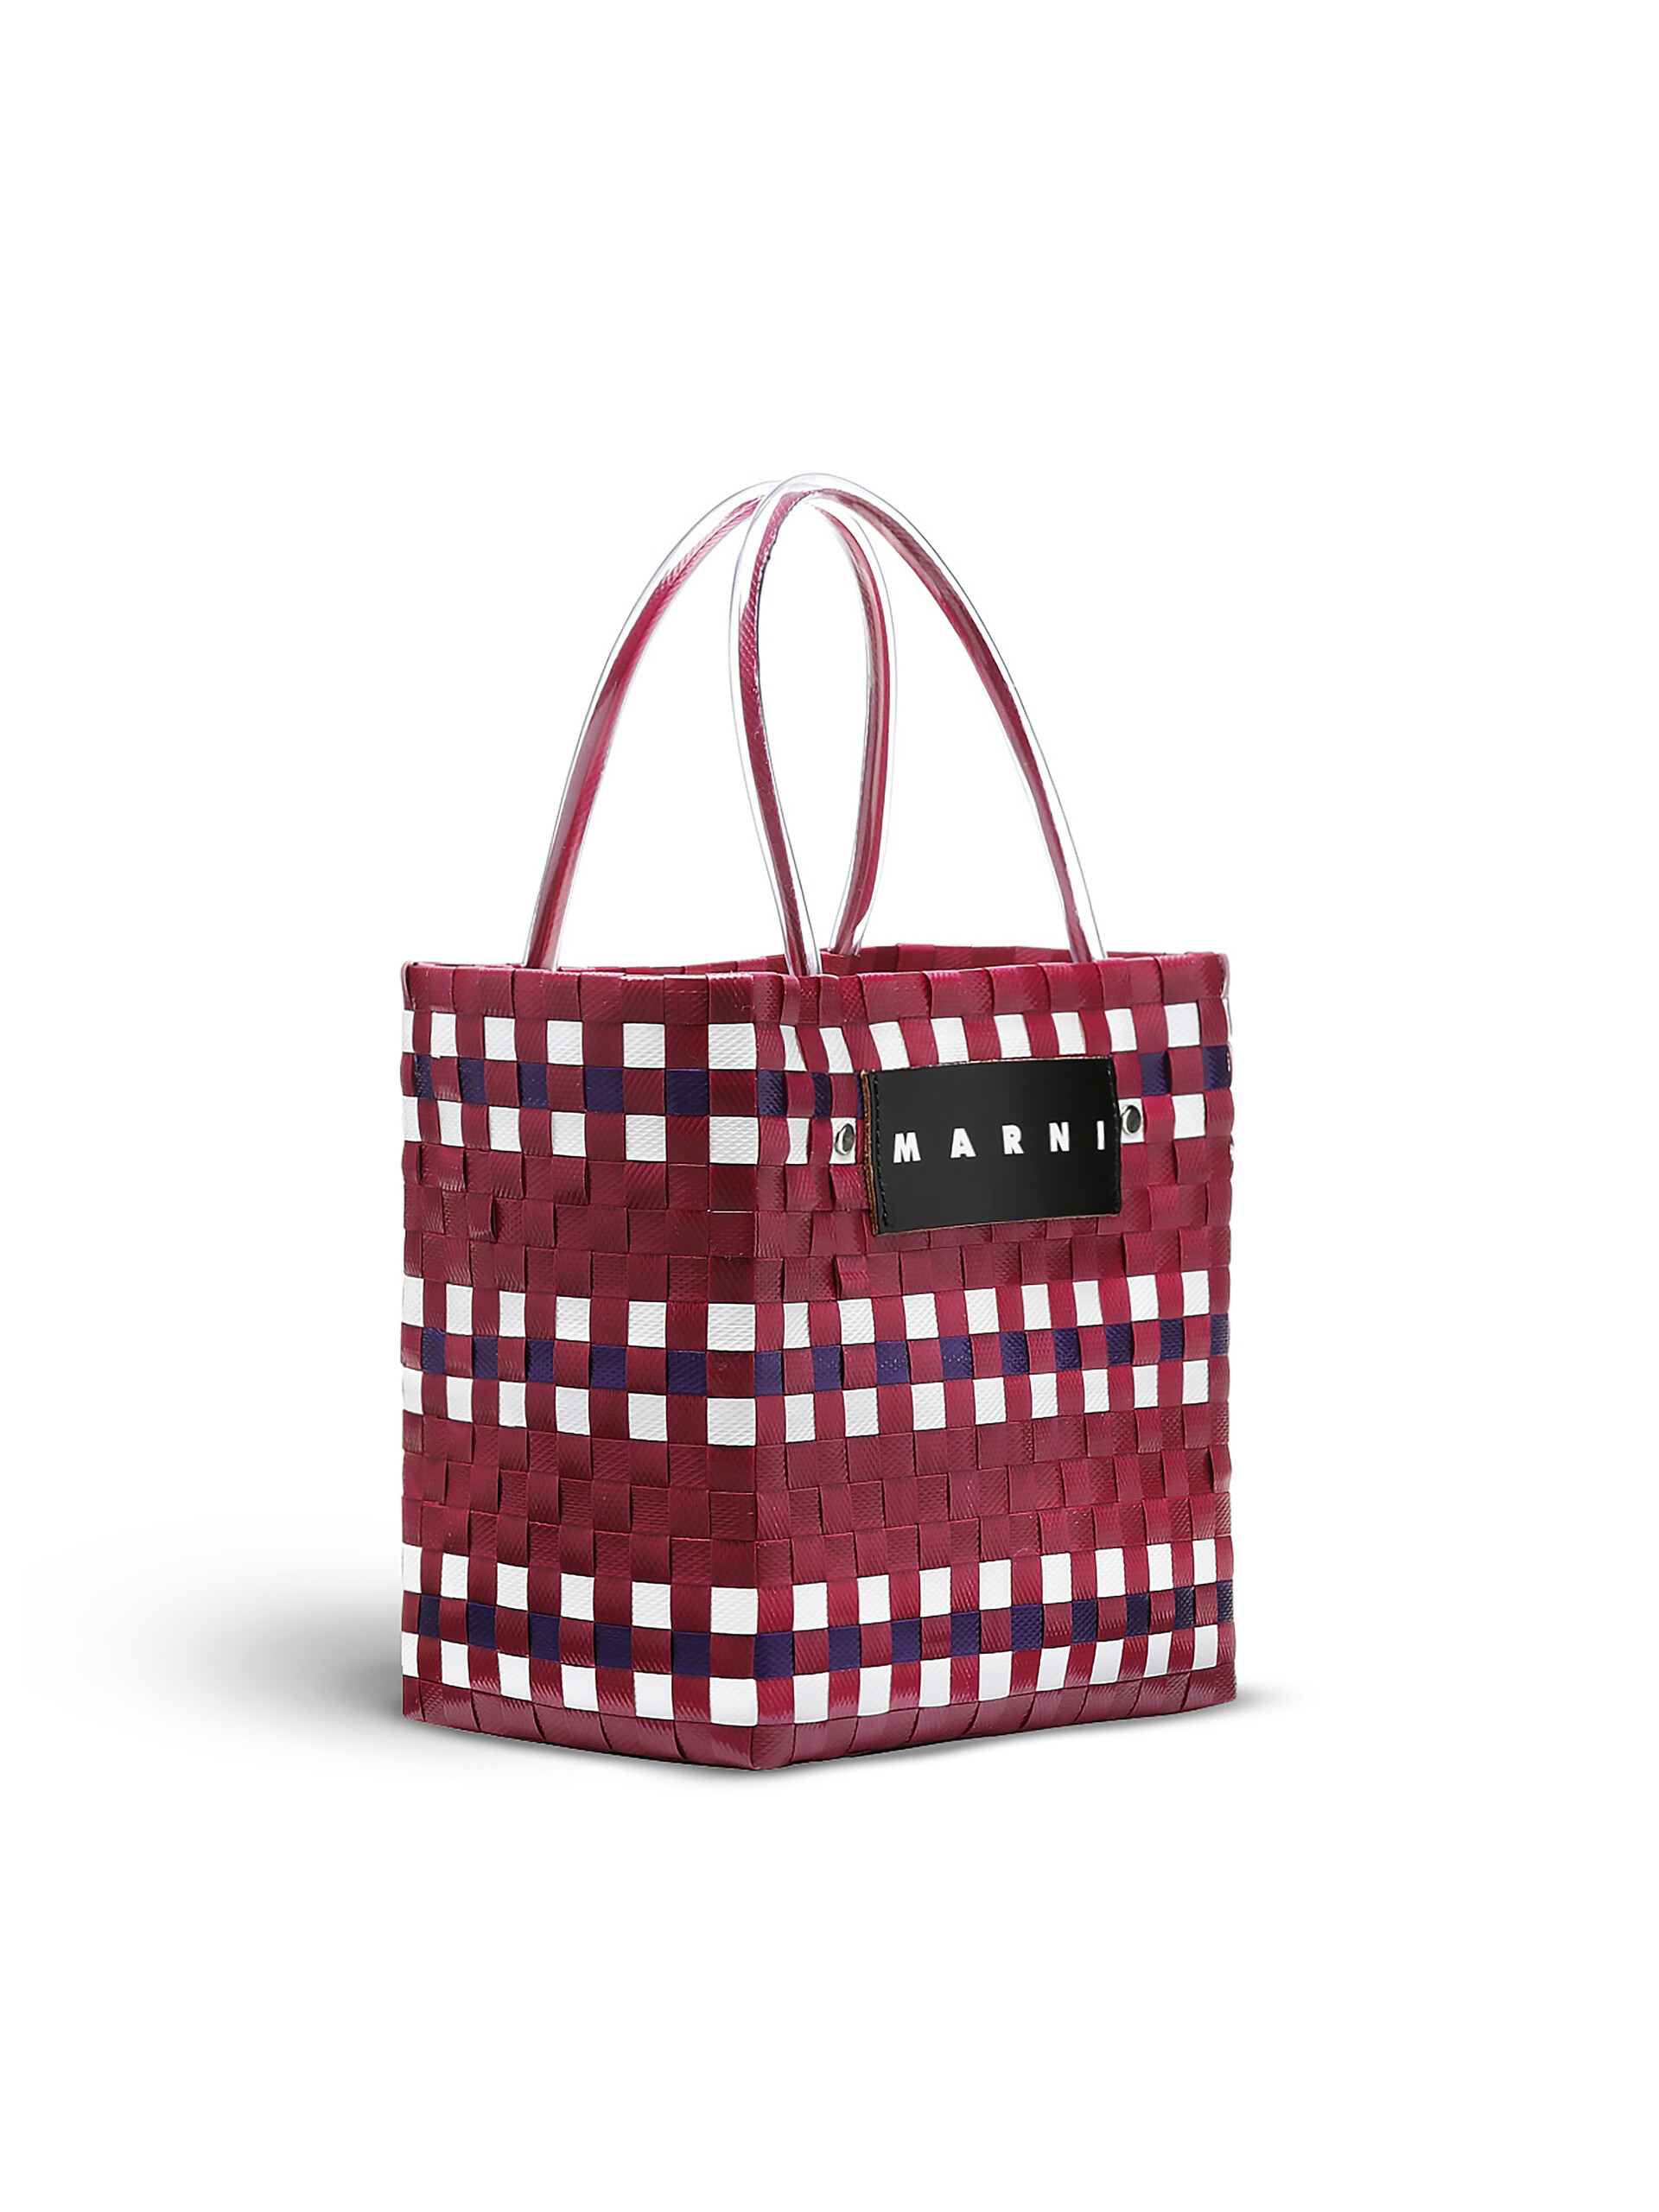 MARNI MARKET shopping bag in pink polypropylene - Bags - Image 2